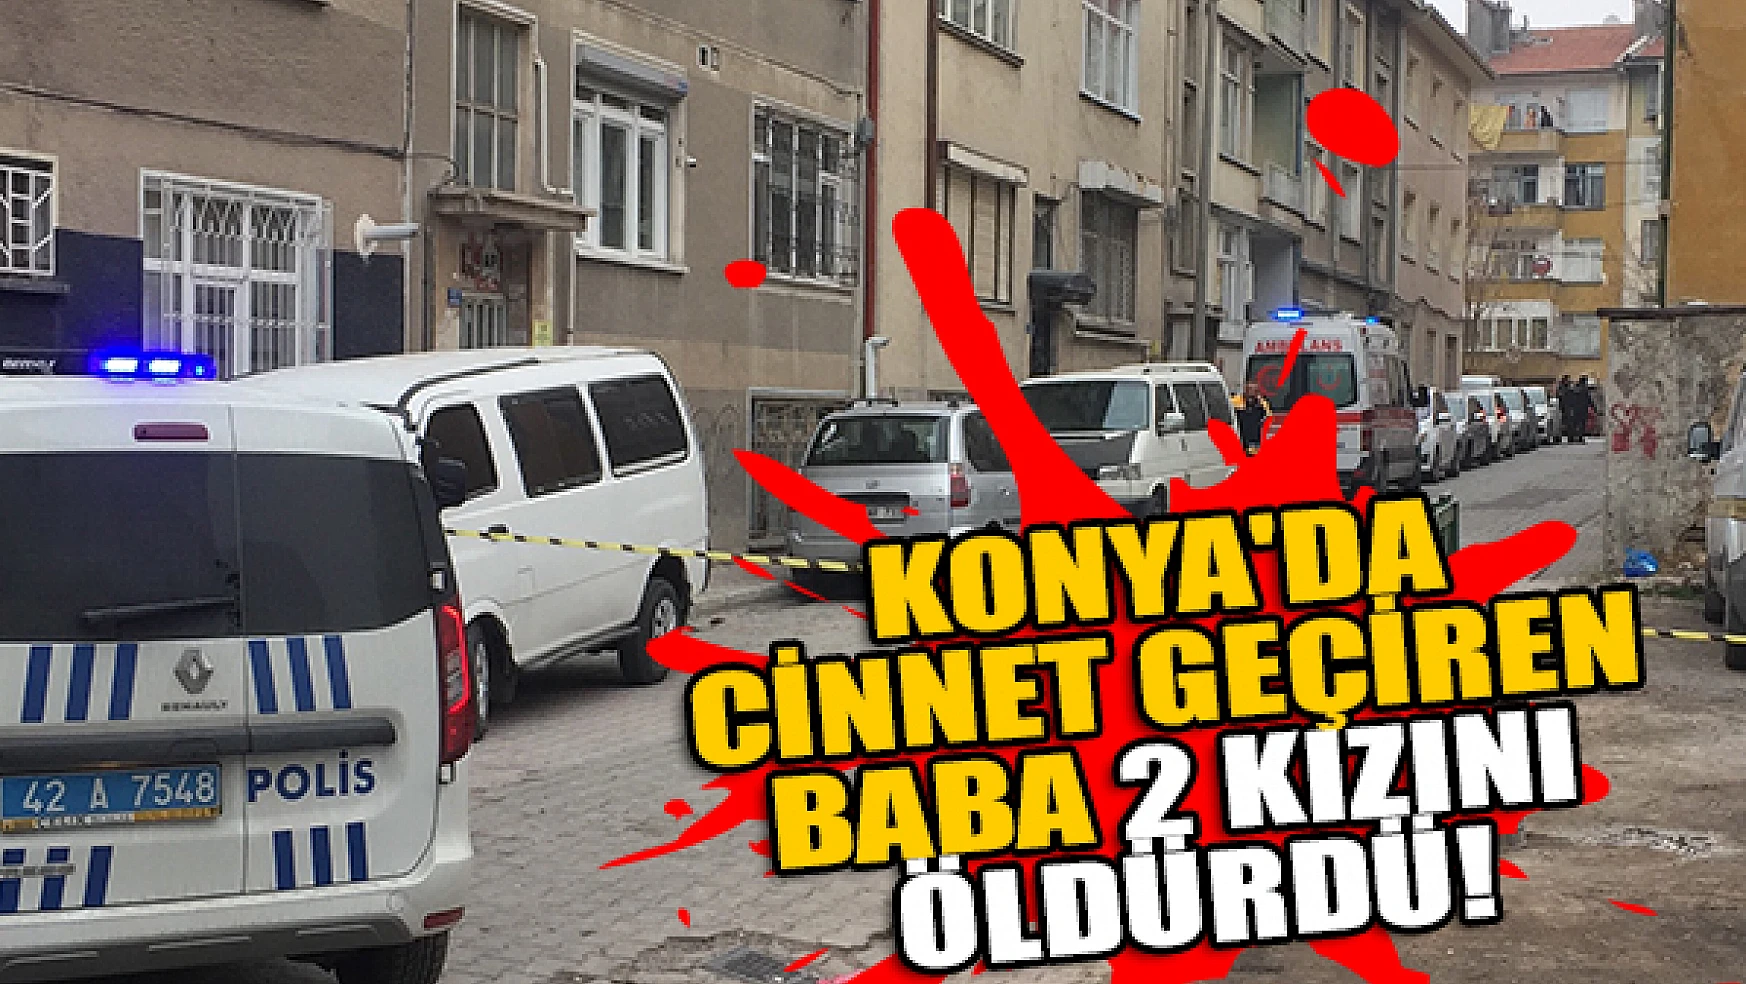 Konya'da cinnet geçiren baba 2 kızını öldürdü!